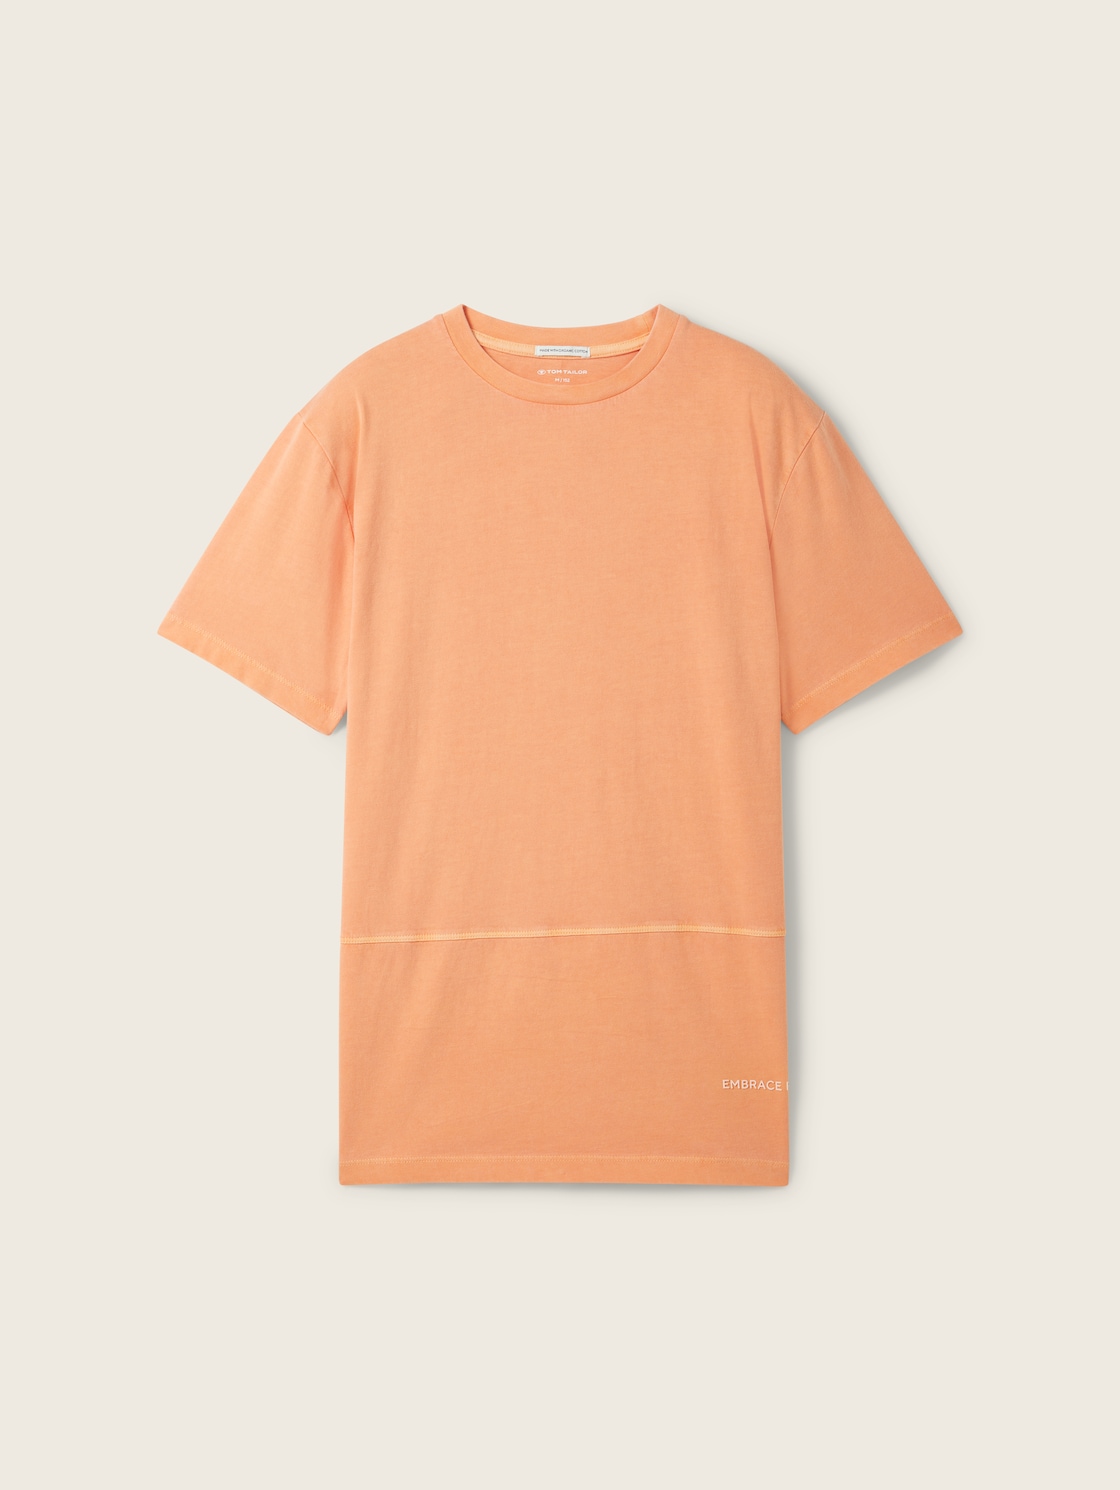 TOM TAILOR Jungen T-Shirt mit Bio-Baumwolle, orange, Uni, Gr. 152 von Tom Tailor